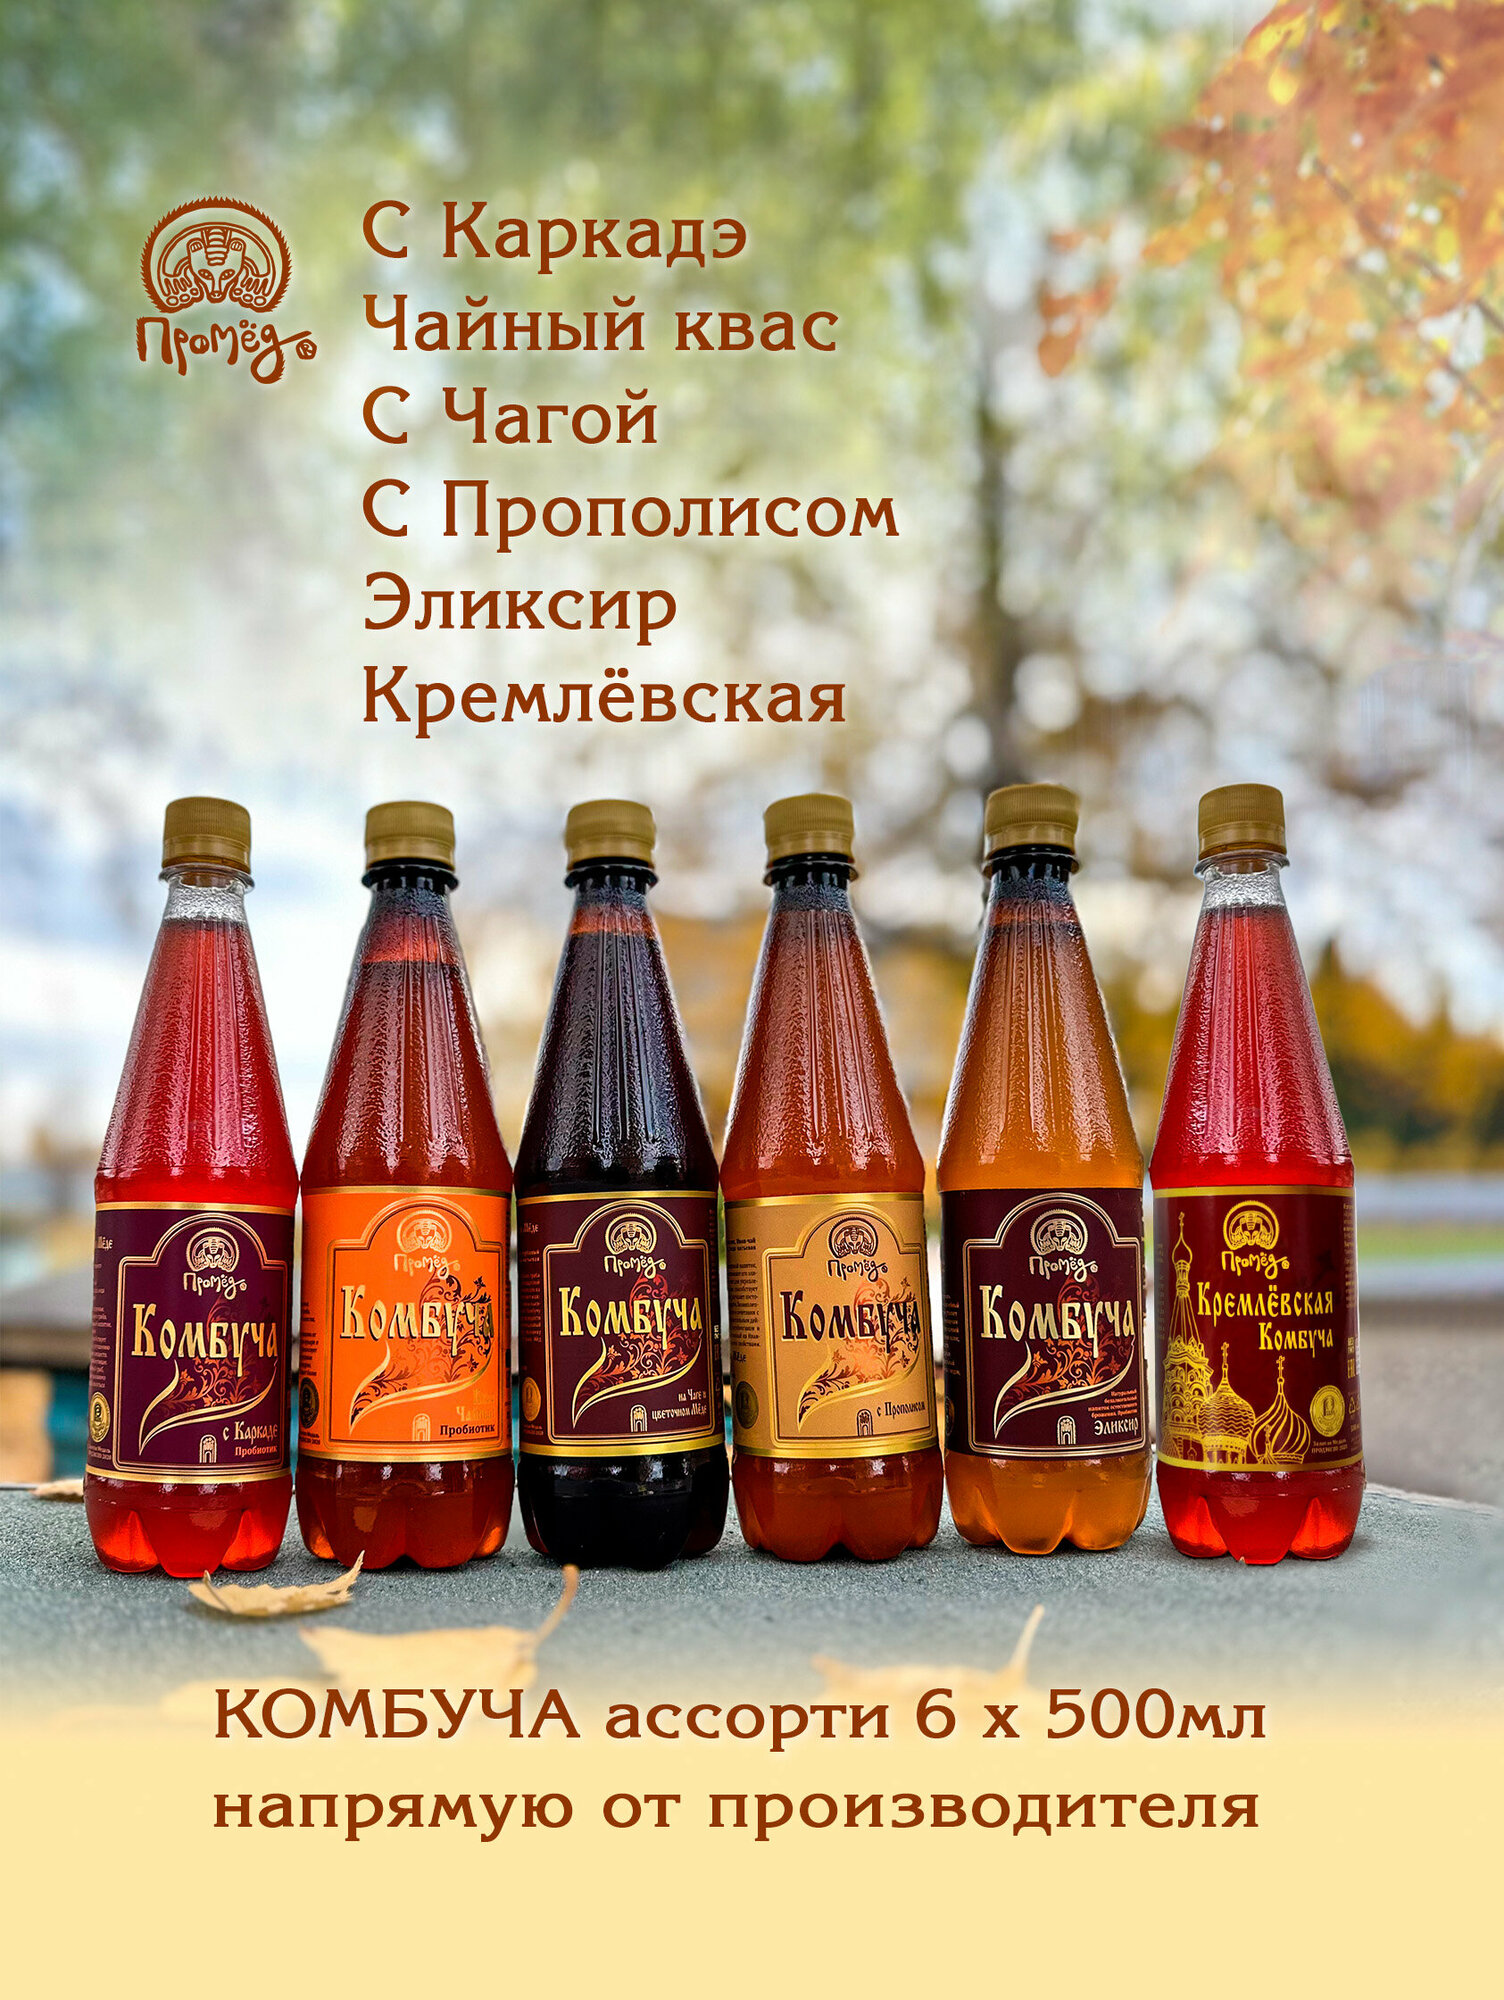 Комбуча 6 вкусов 0,5 л Чайный квас, на Чаге, Эликсир, с Каркадэ, с Прополисом, Кремлёвская. Промёд